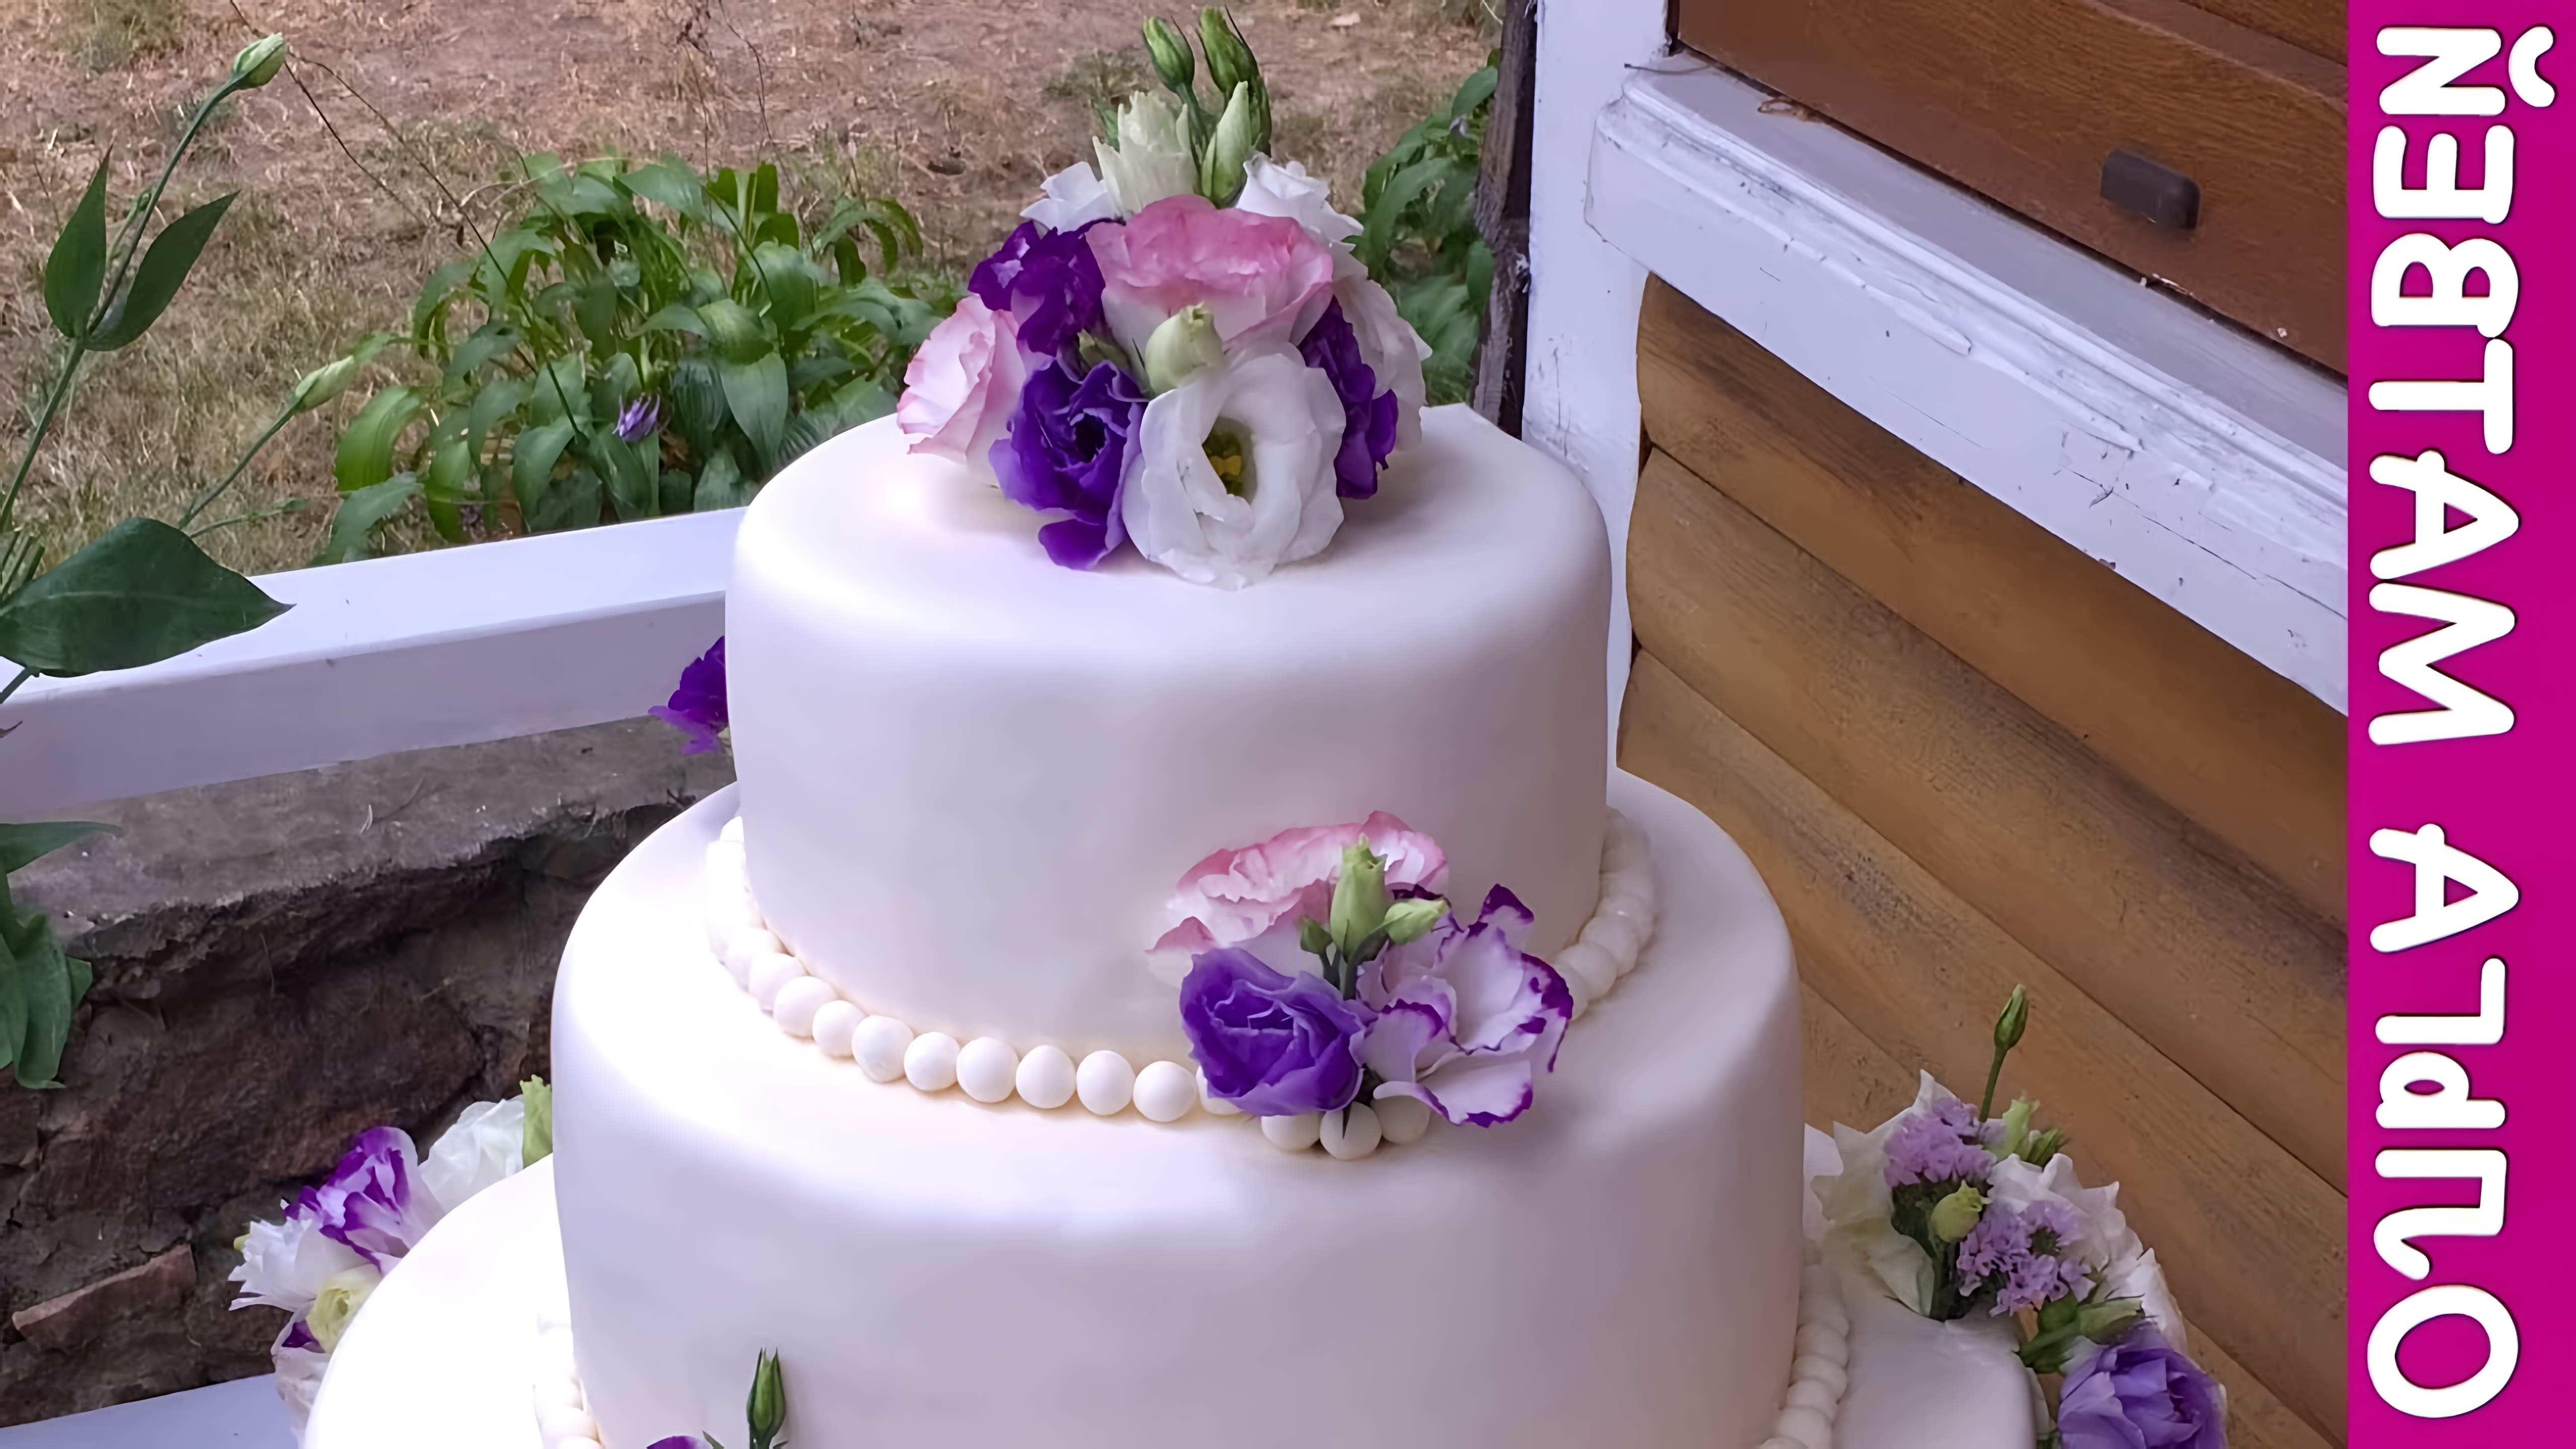 В этом видео показано, как сделать свадебный торт своими руками